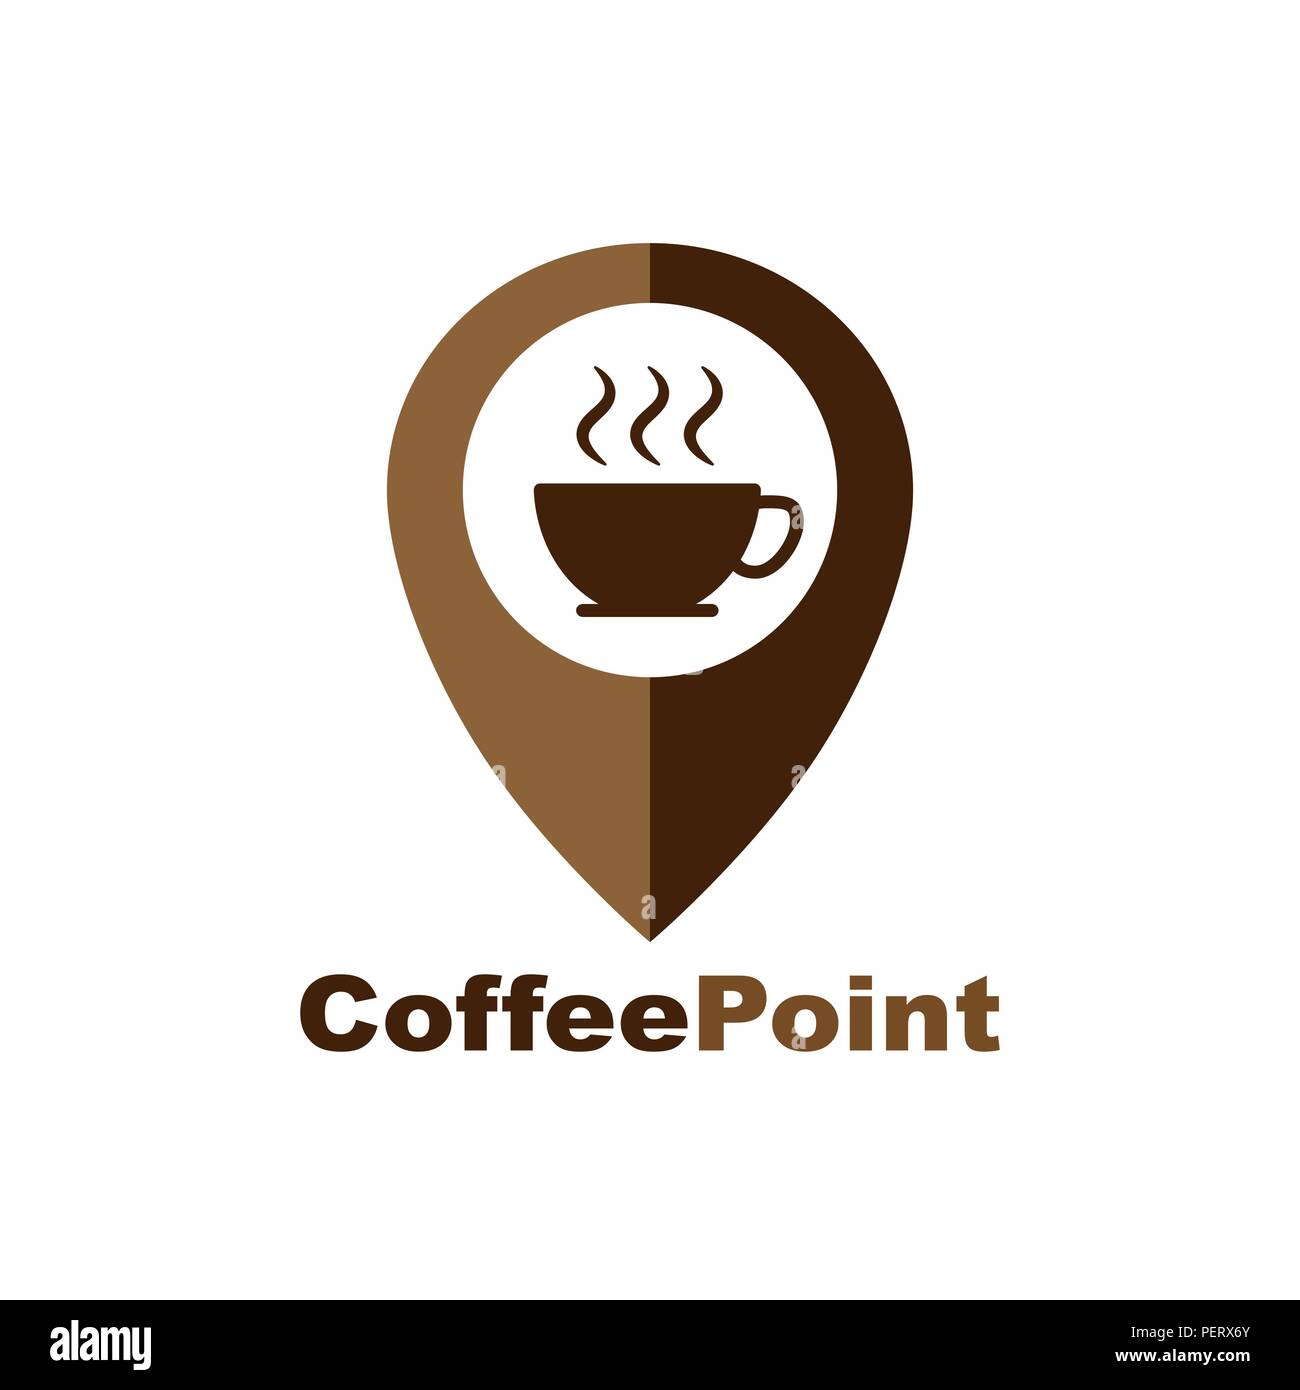 Kaffee Tasse House Cafe Logo Design. Zeiger und eine Tasse heißen Kaffee,  Web Icon. vektor design Stock-Vektorgrafik - Alamy